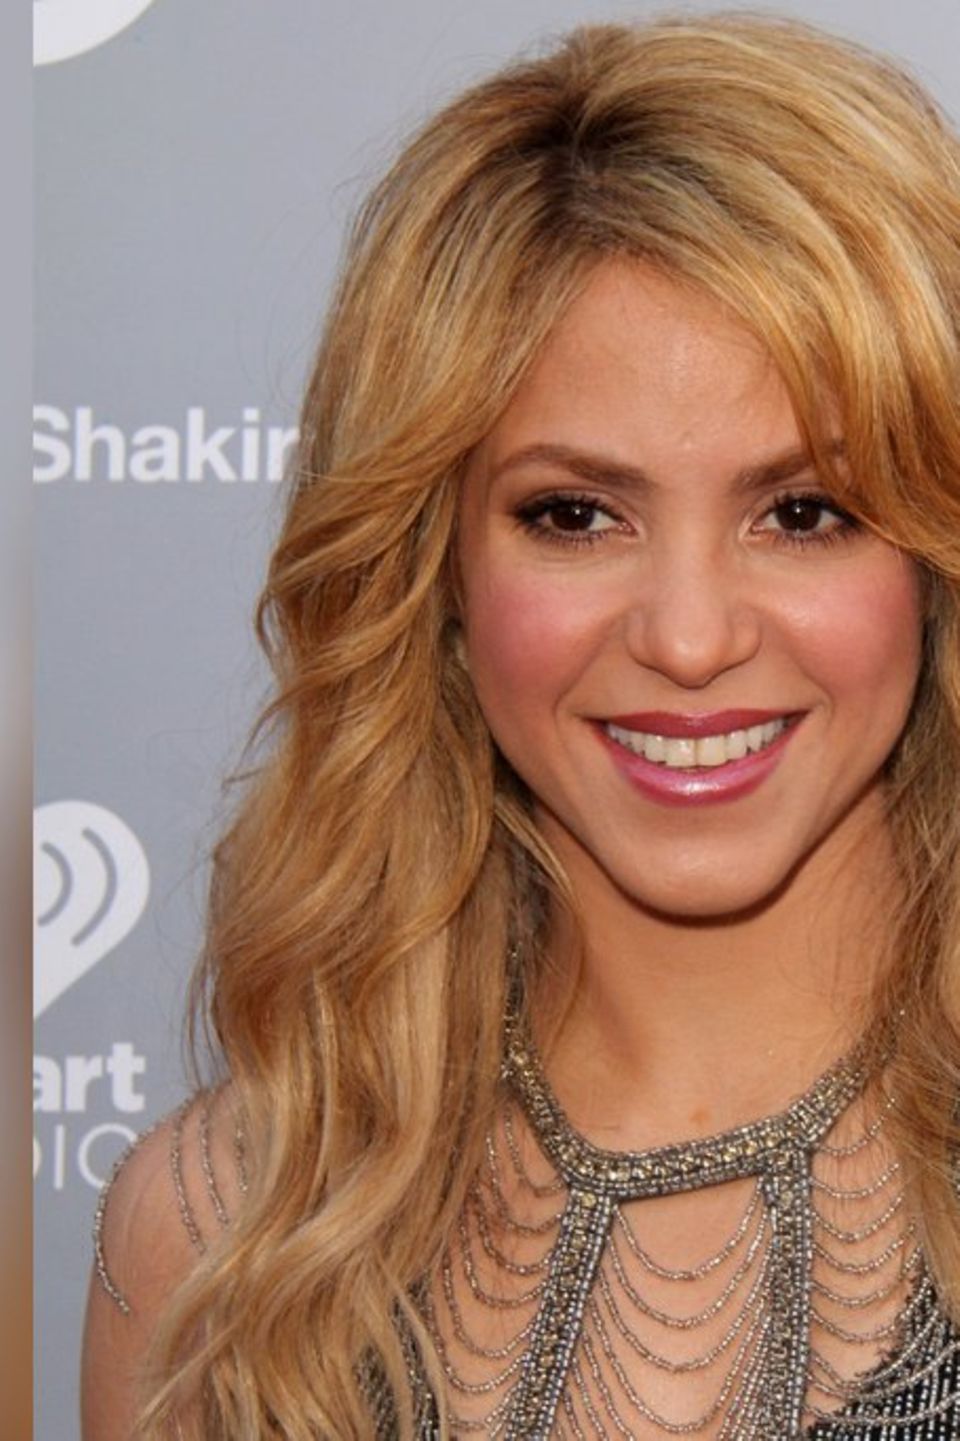 Shakira singt in ihrem neuen Lied darüber, wie ihre Söhne ihr nach der Trennung Kraft geben. Milan und Sasha sind in dem Song